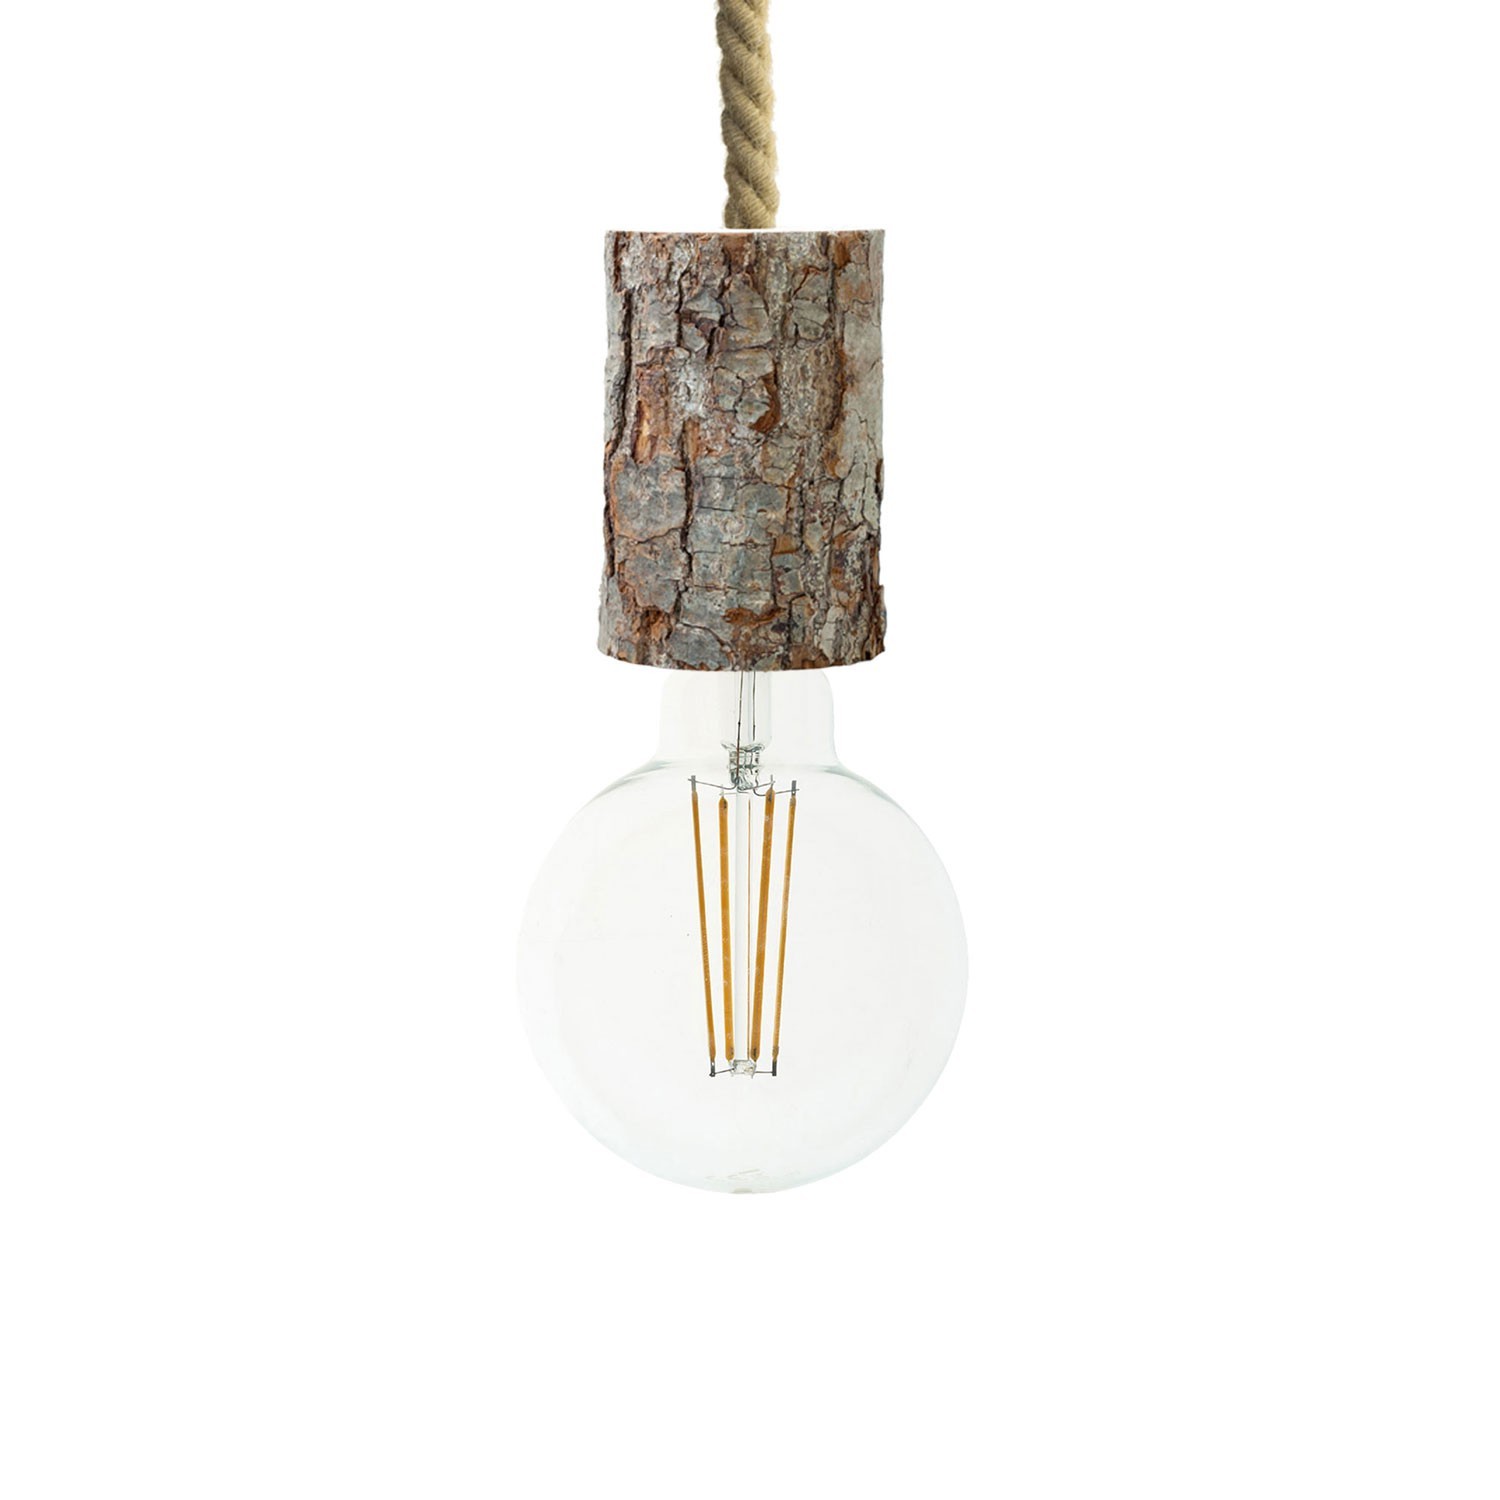 Viseća lampa s mornarskim užem XL kabelom i malim grlom od grane s korom - Proizvedeno u Italiji